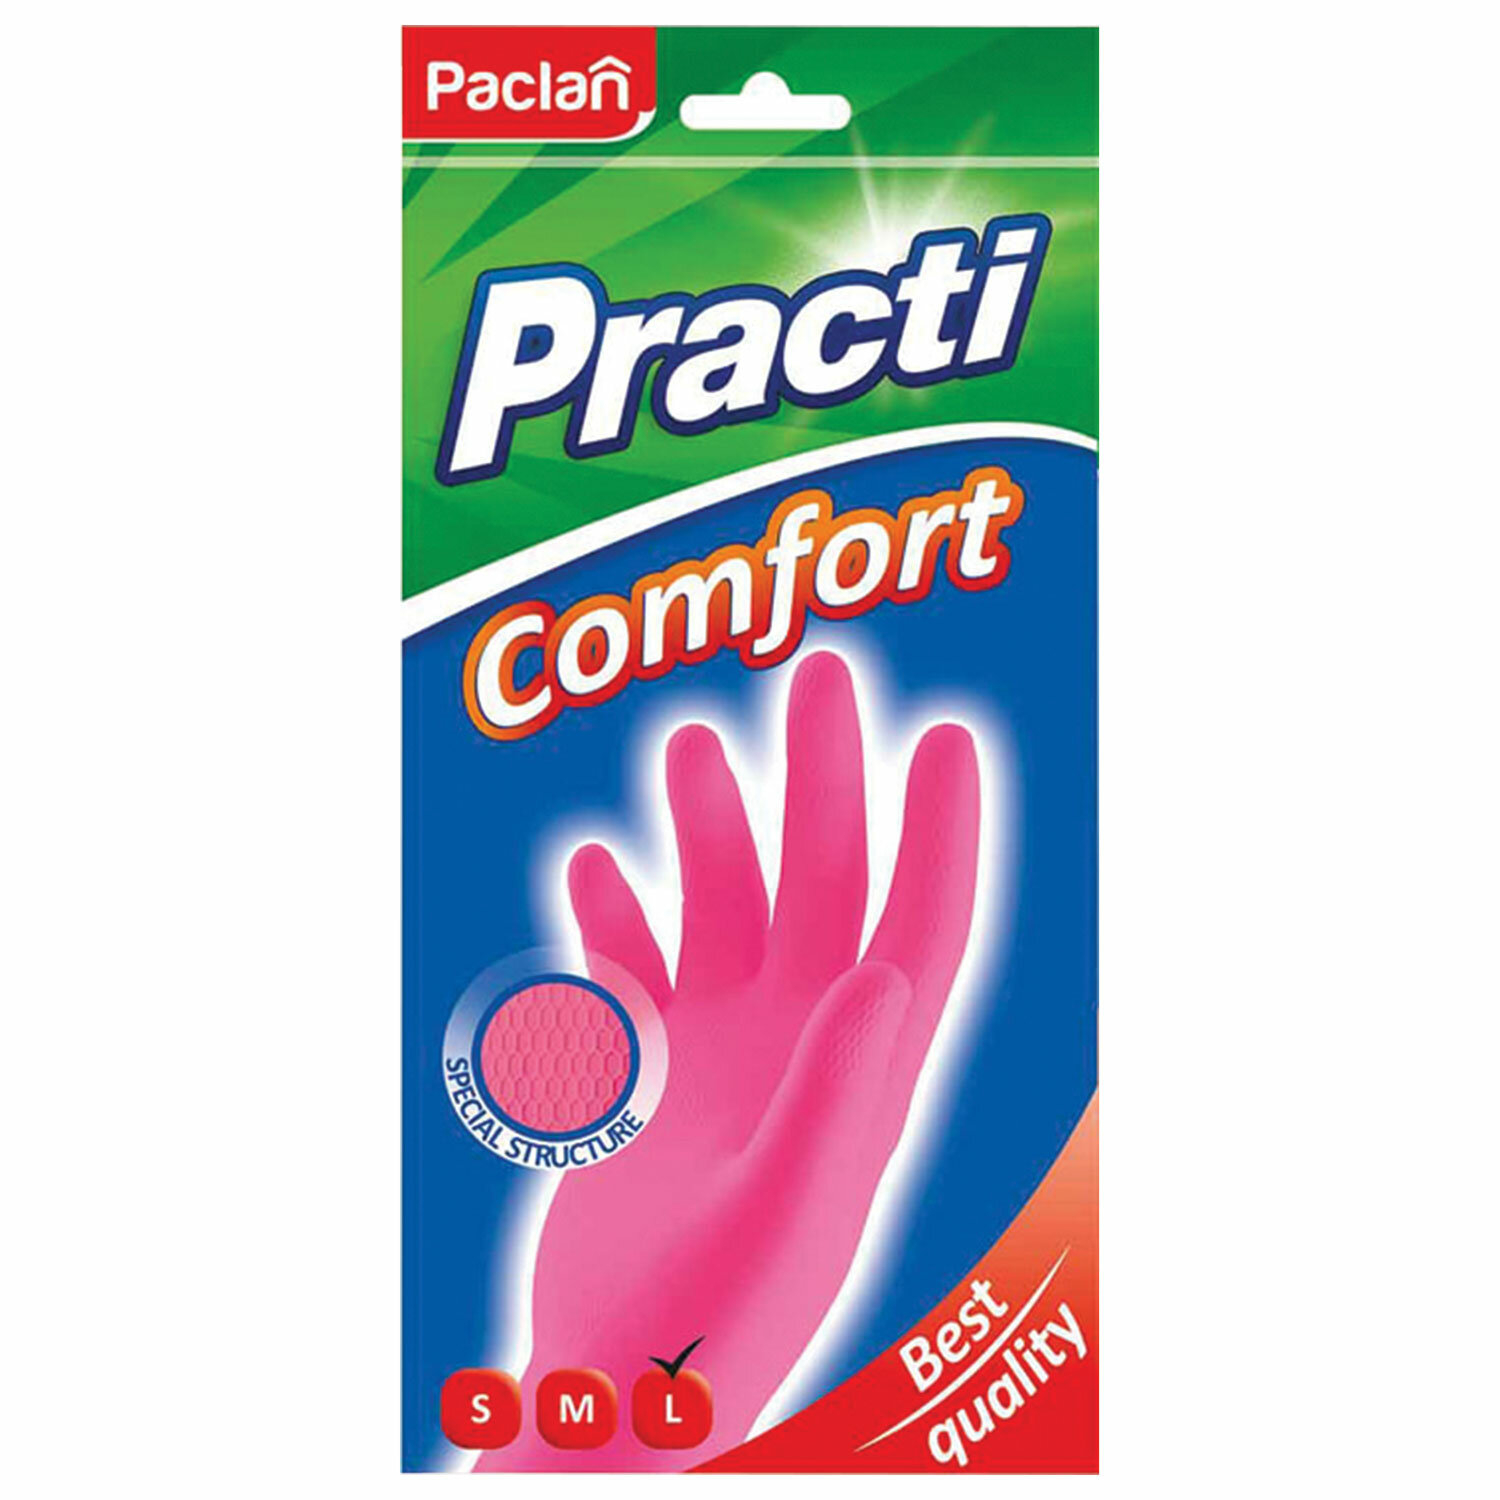 Перчатки резиновые Paclan extra dry размер L 1 пара в ассортименте paclan перчатки резиновые хозяйственные